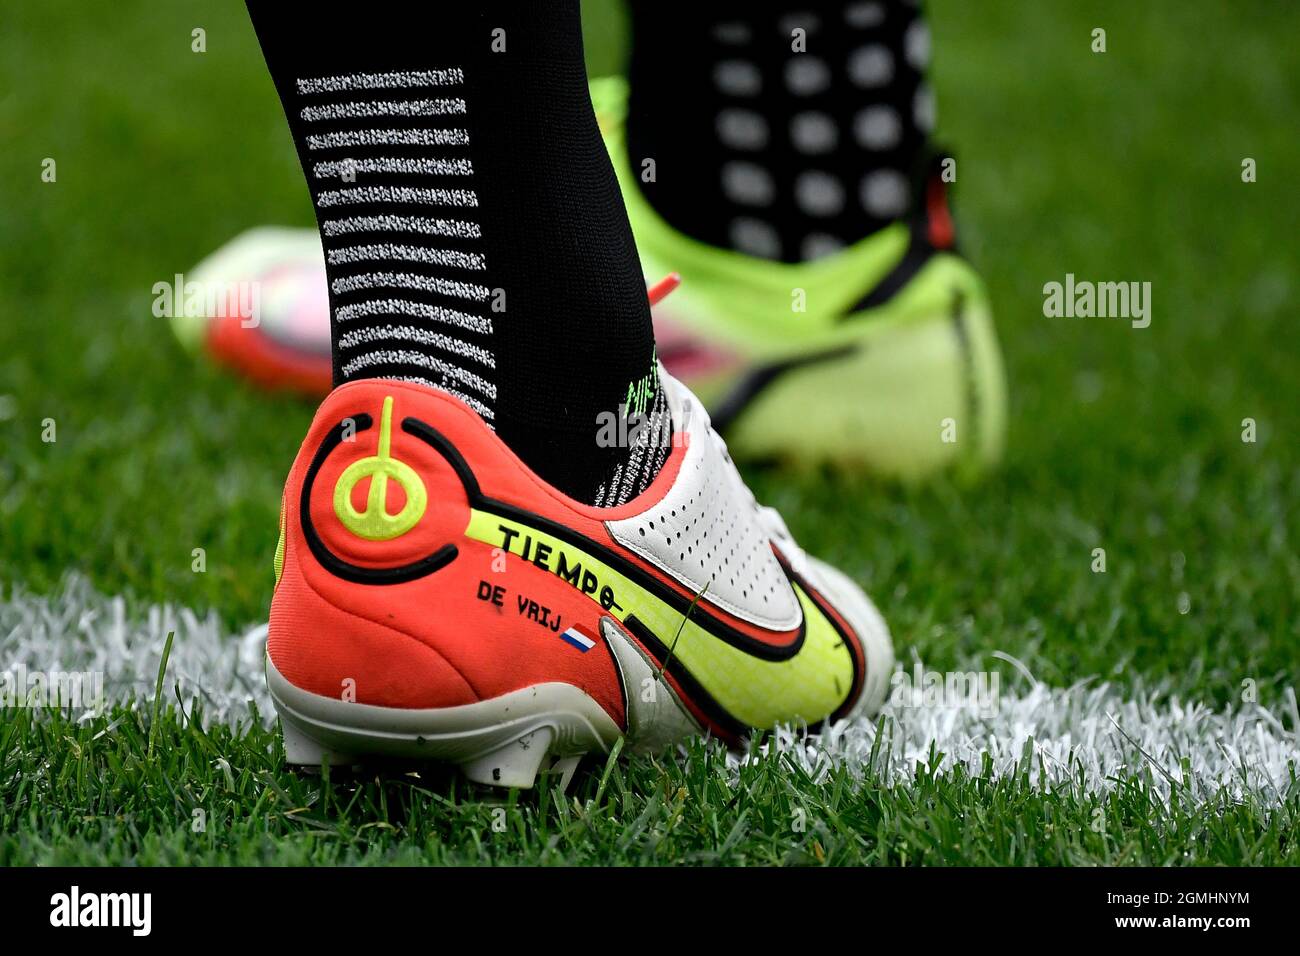 Nike tiempo immagini e fotografie stock ad alta risoluzione - Alamy